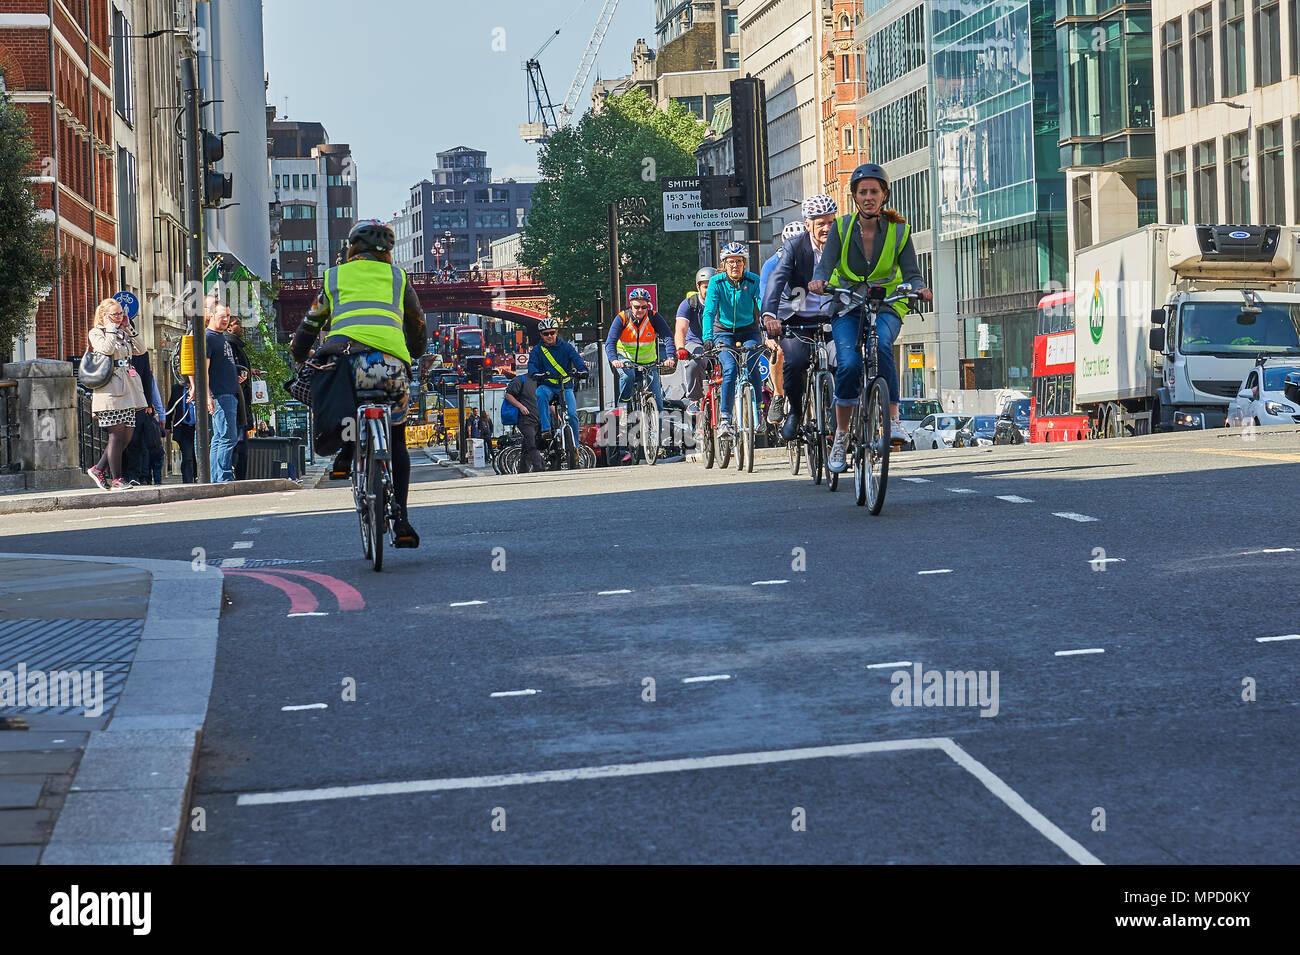 Escursioni in bicicletta a Londra è aumentato dopo l'introduzione di migliori infrastrutture e segregate le corsie di biciclette. Foto Stock